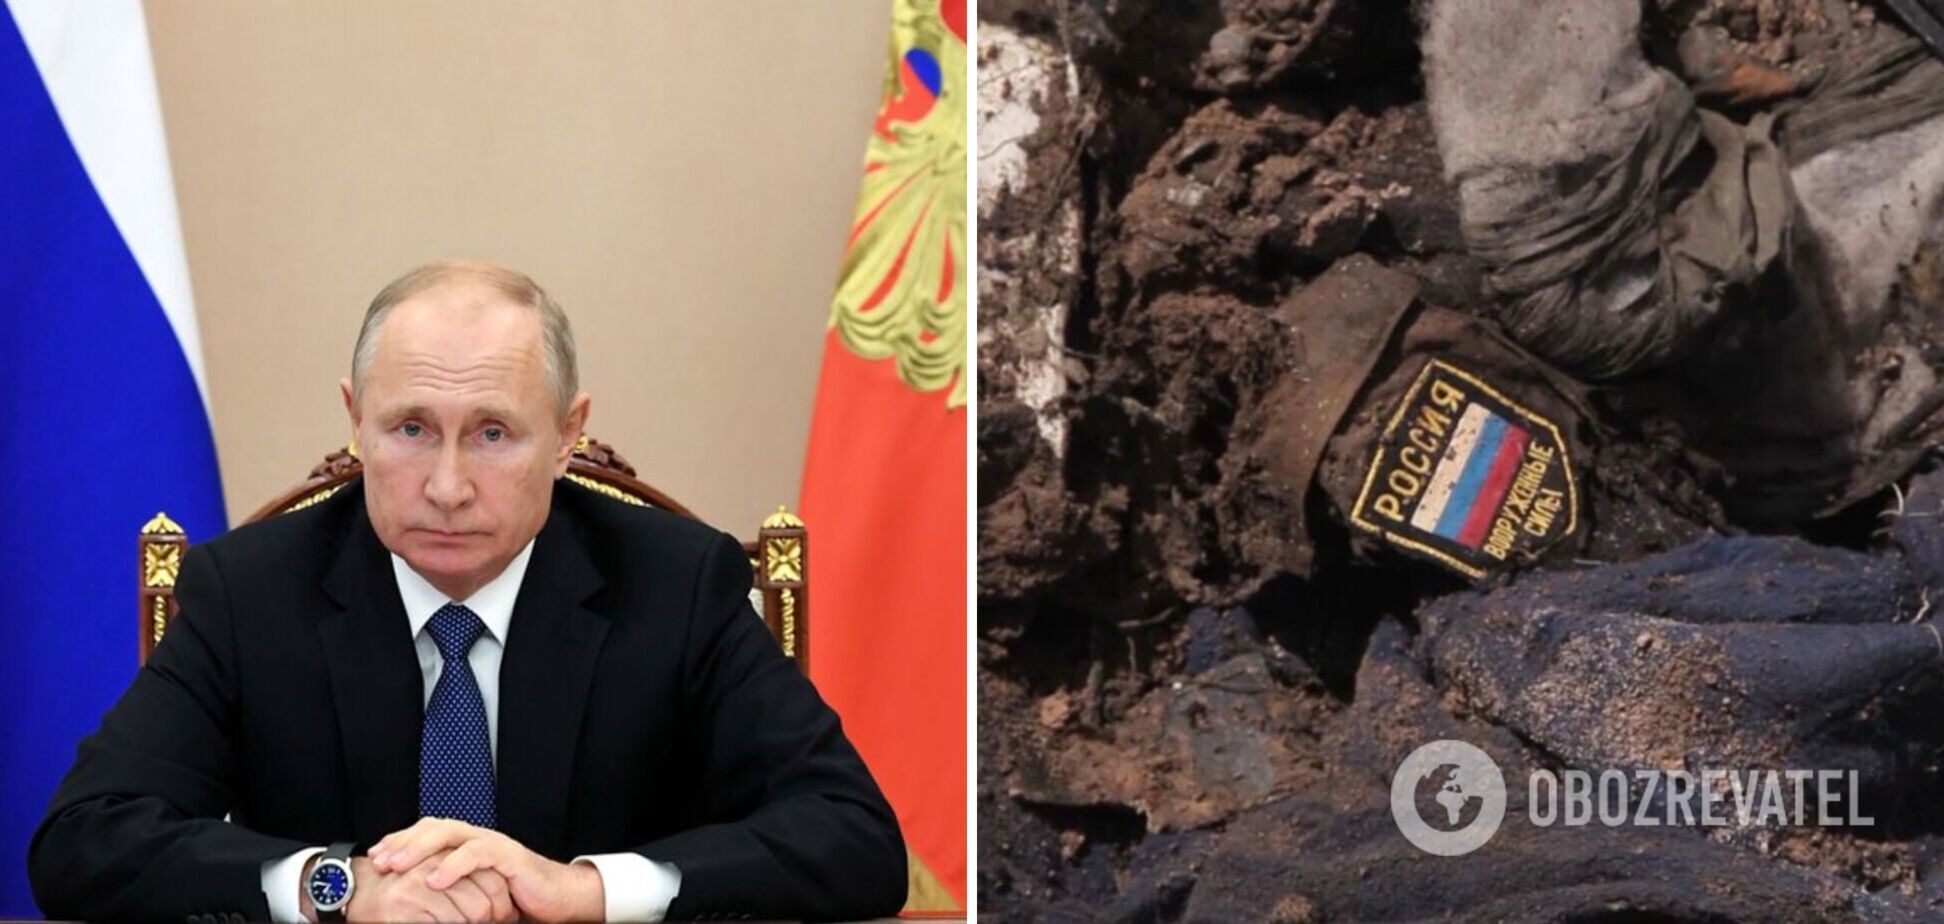 'Вы проиграли': Путину на совещании генерал прямо сказал о провале в Украине, вопросы попытались 'замять' – СМИ